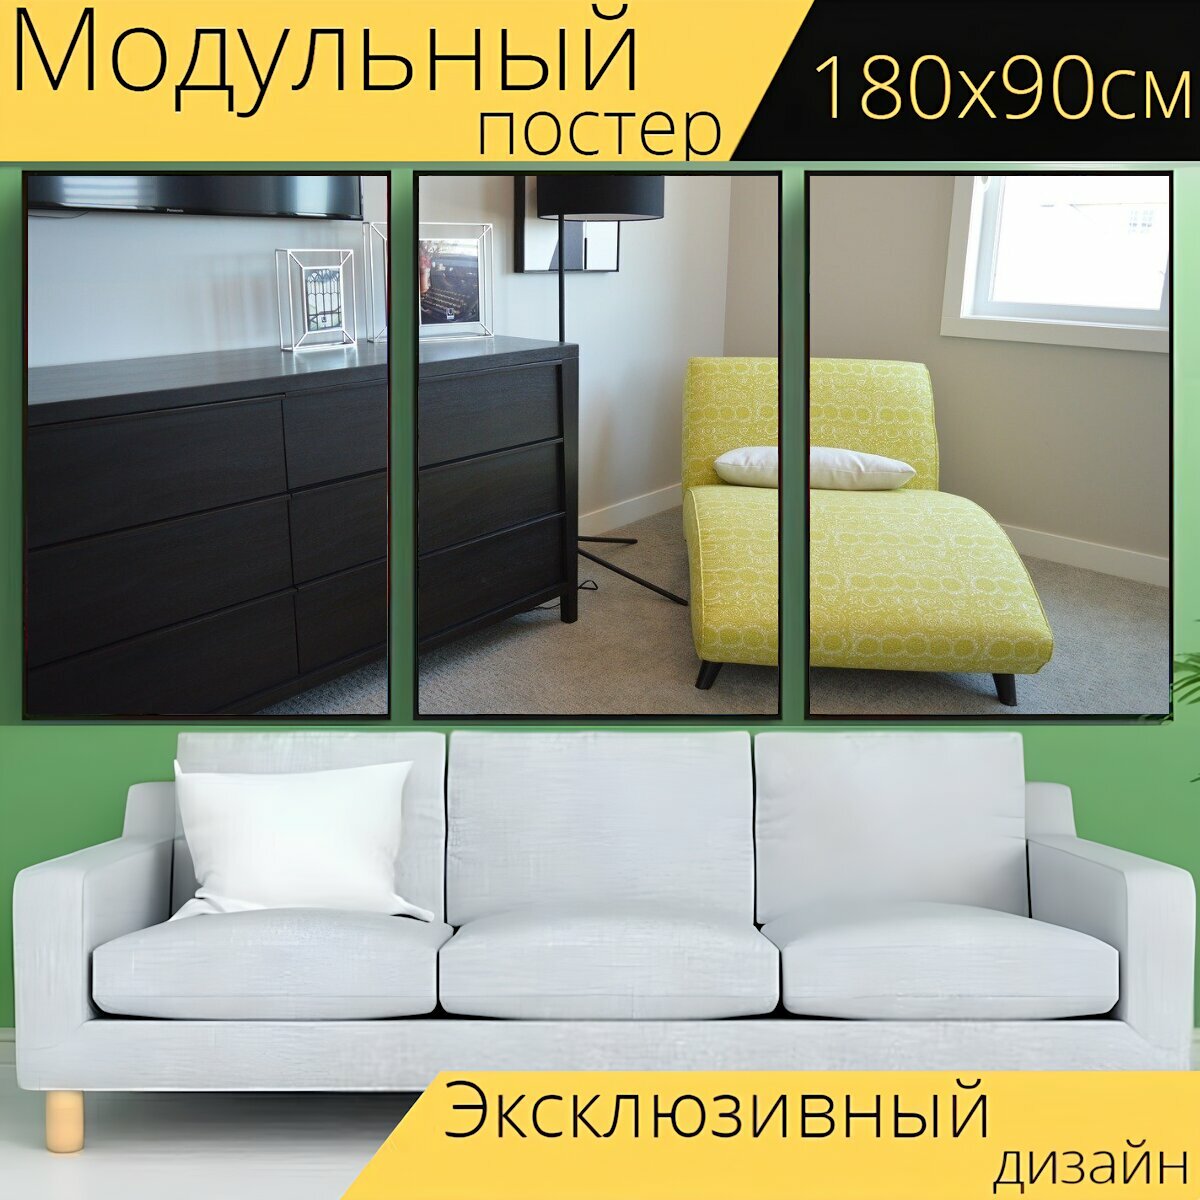 Модульный постер "Шезлонг, стул, лежак" 180 x 90 см. для интерьера